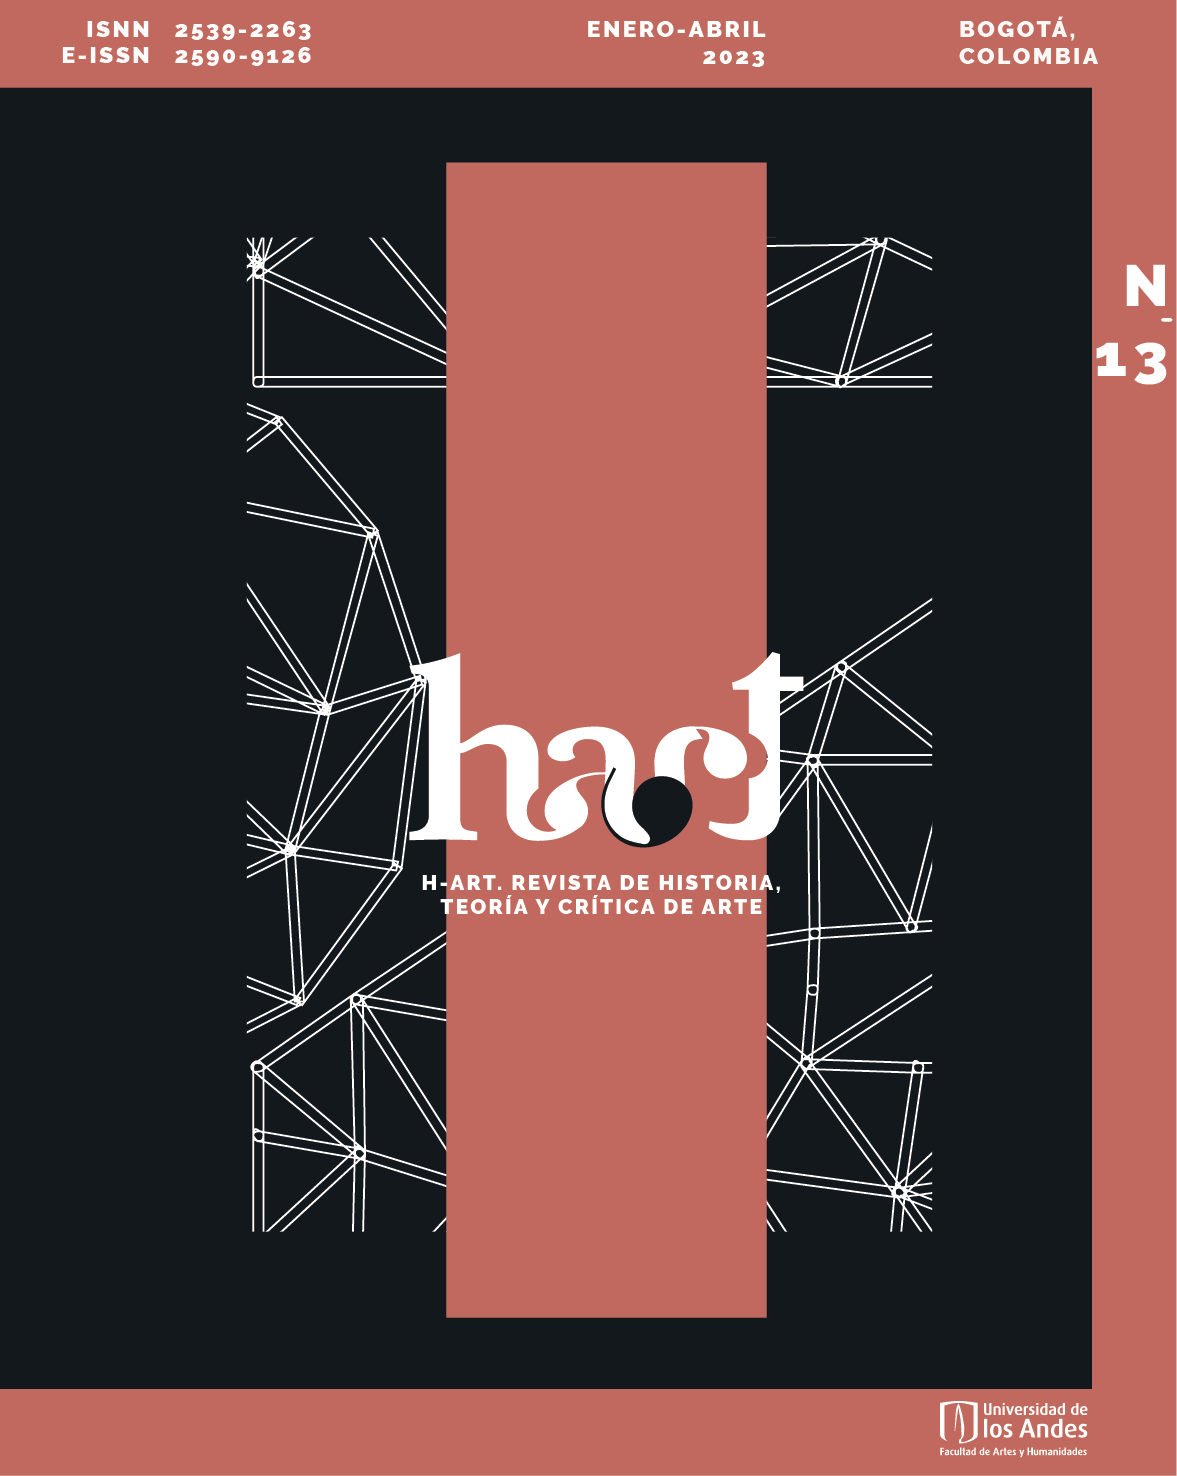 H-ART. Revista de historia, teoría y crítica de arte lanza su número 13